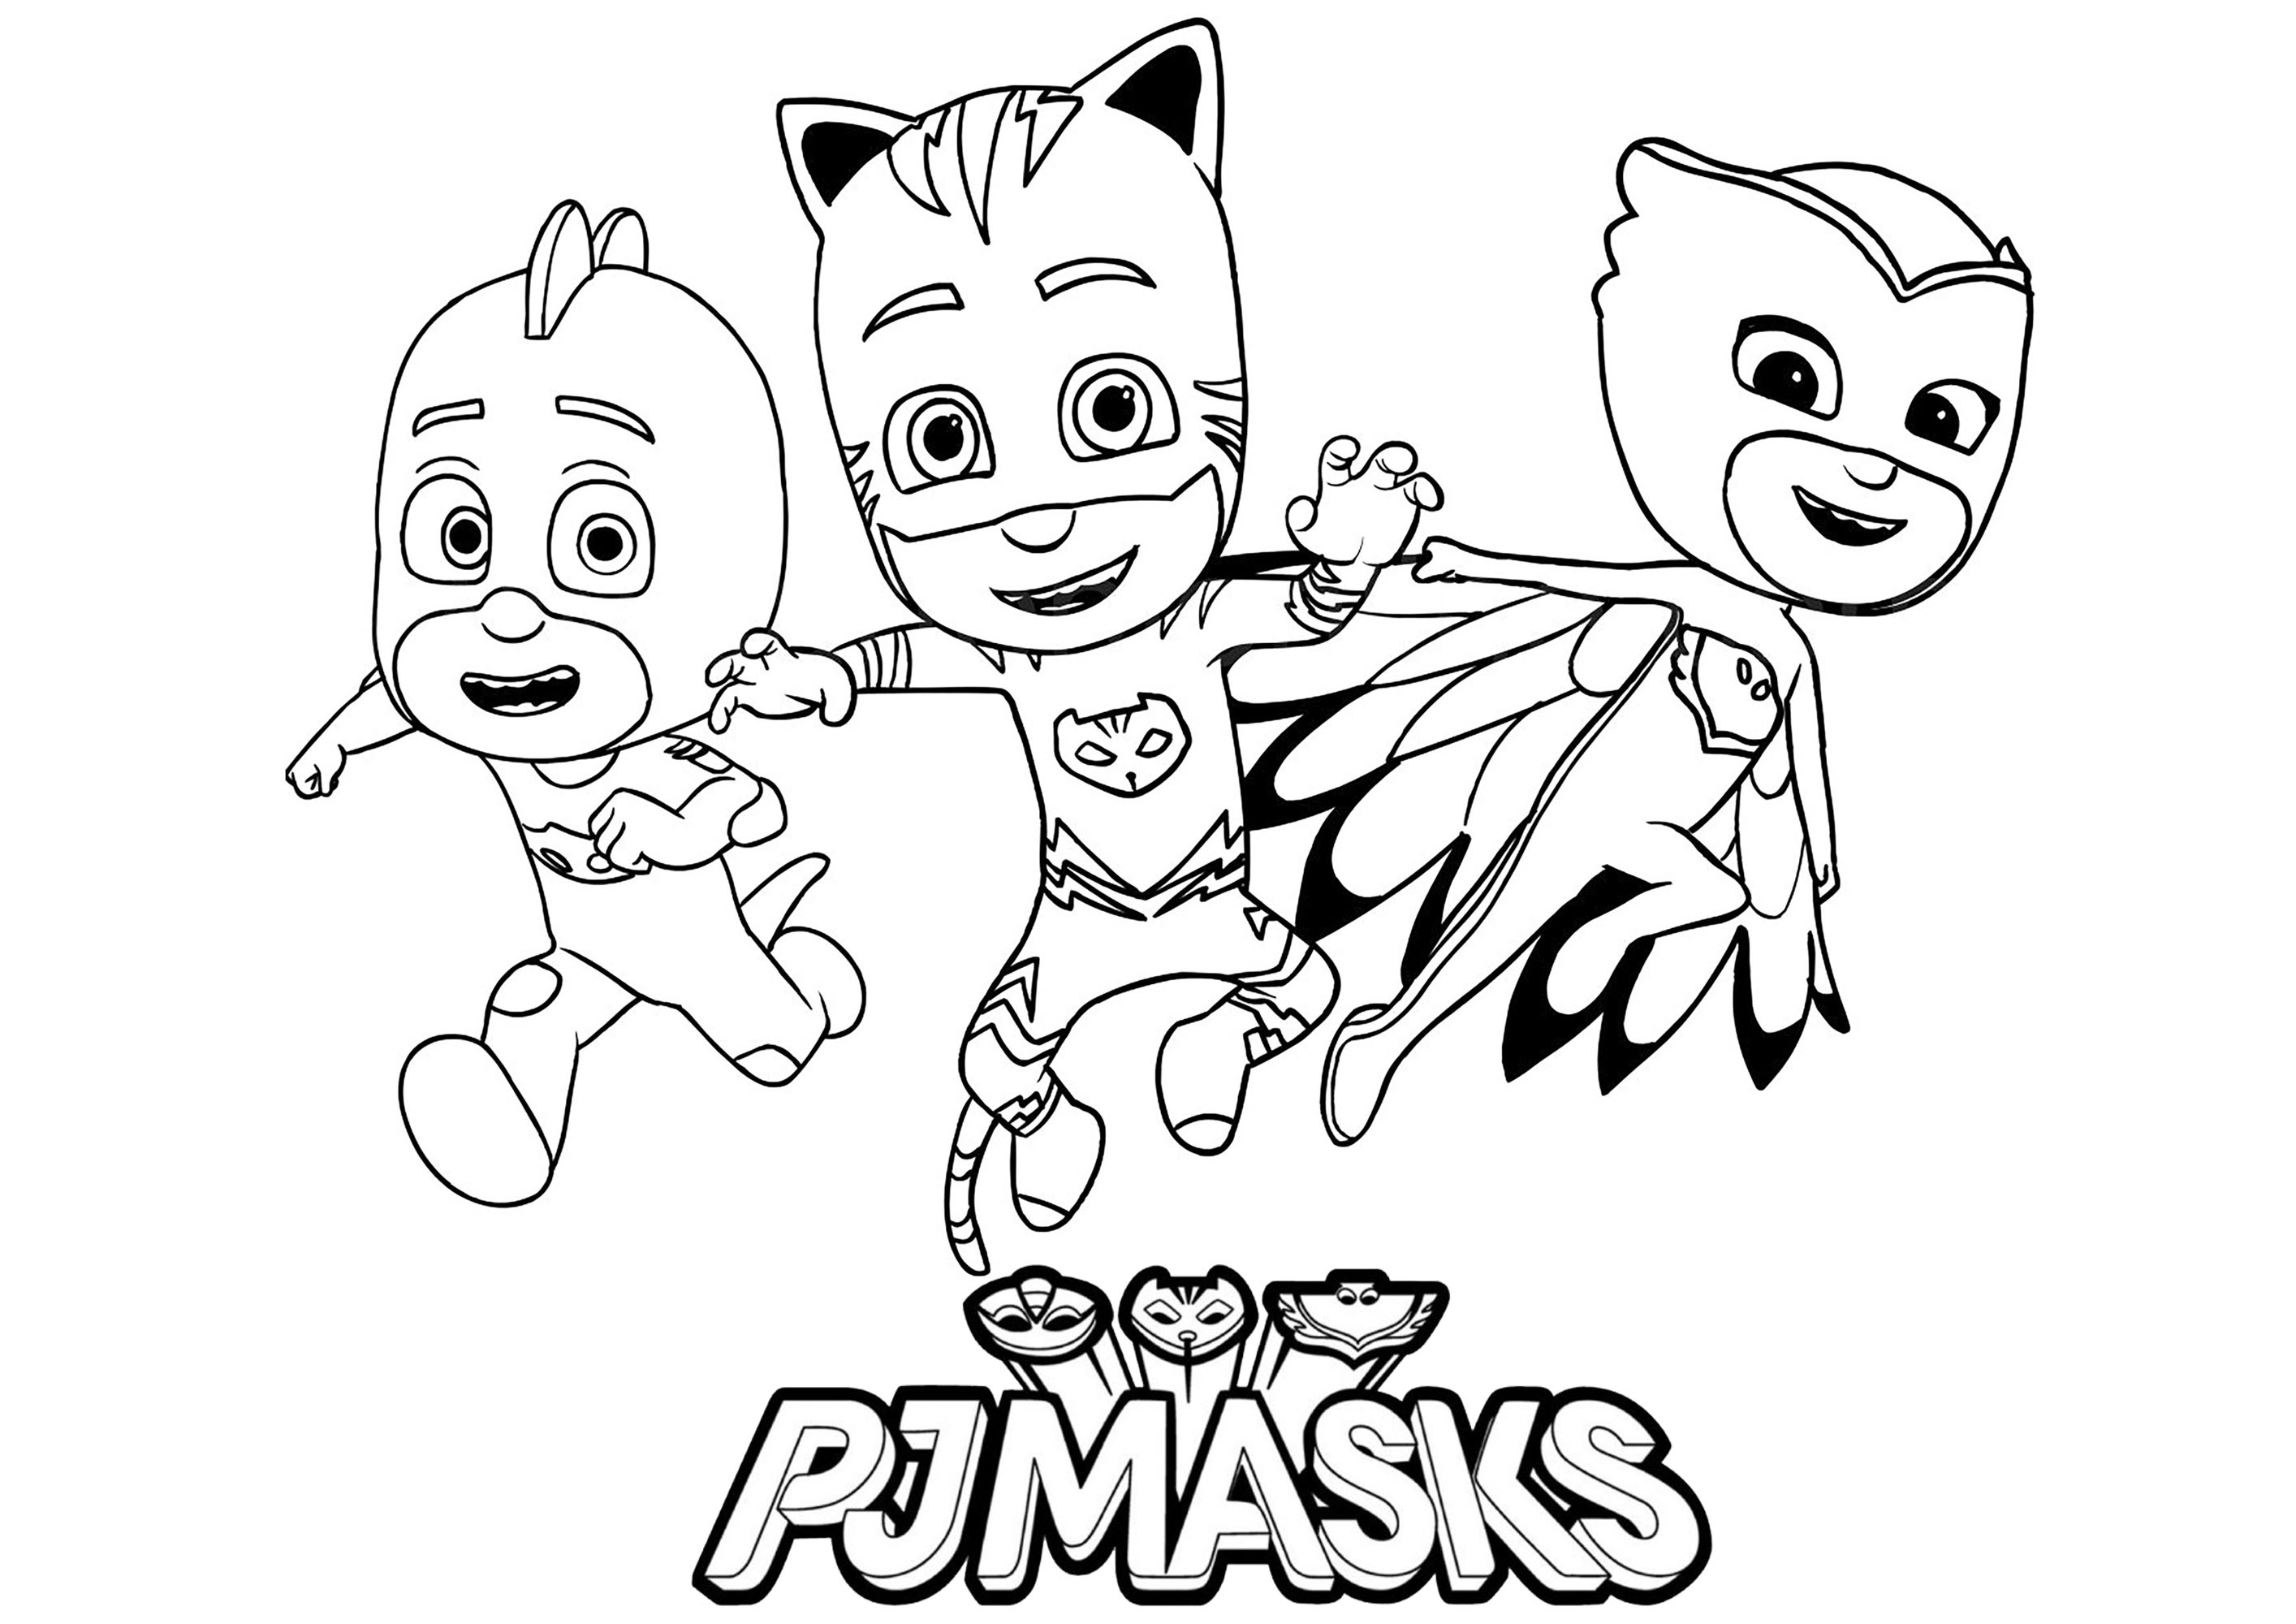 Coloriage des 3 personnages, avec le logo de Pyjamasques  (PJ Masks)